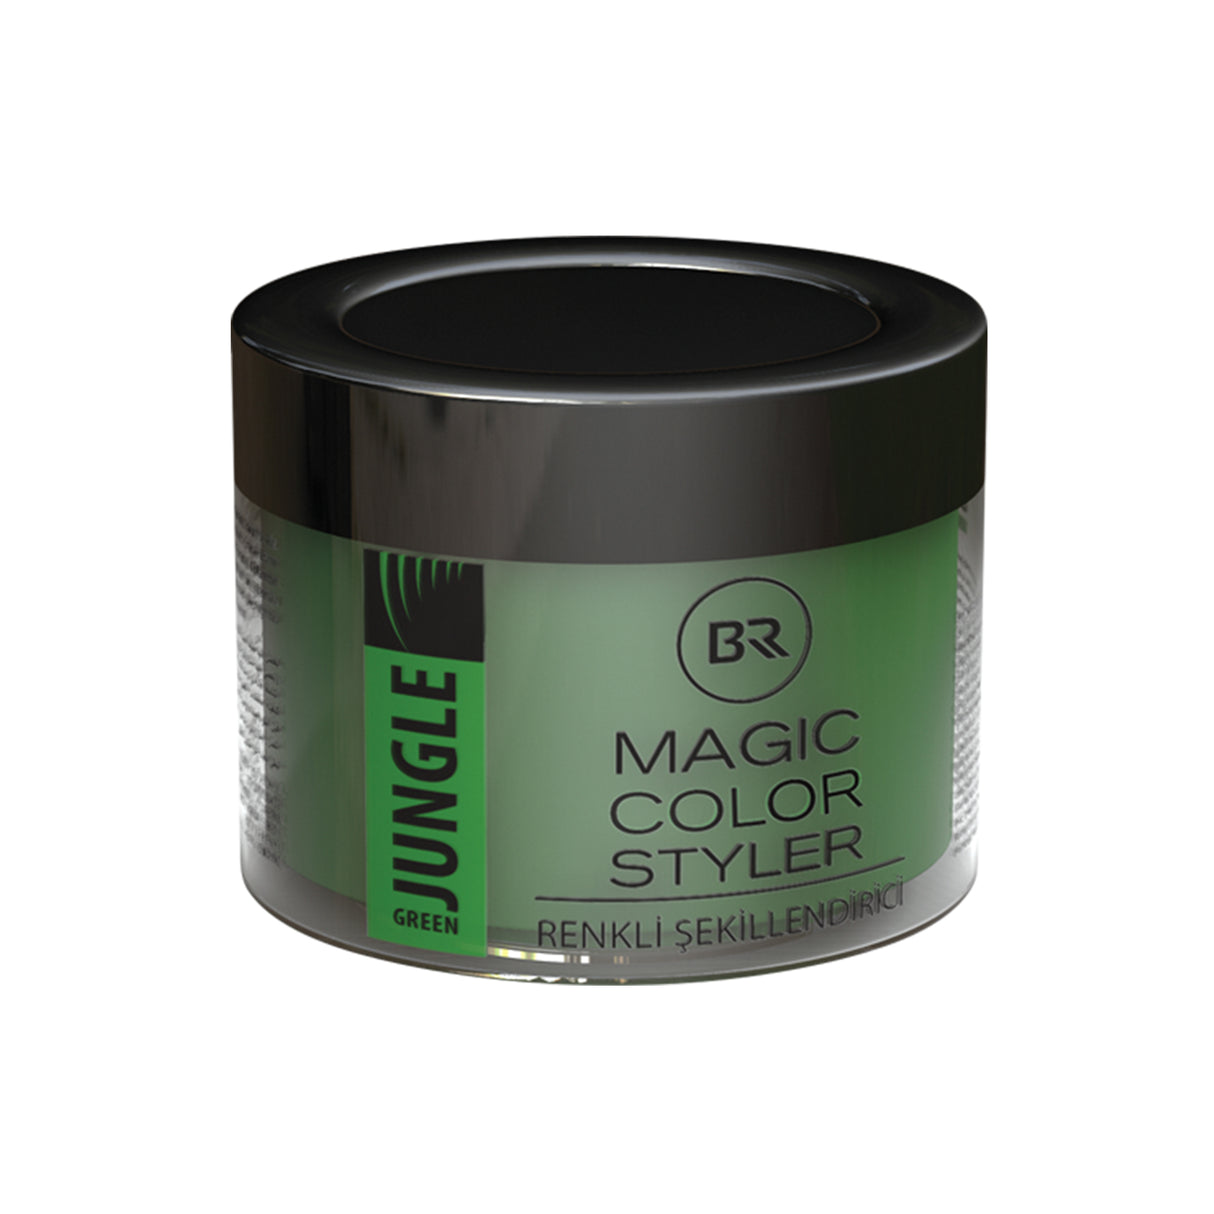 B&R Magic Colour Styling Wax 100 ml